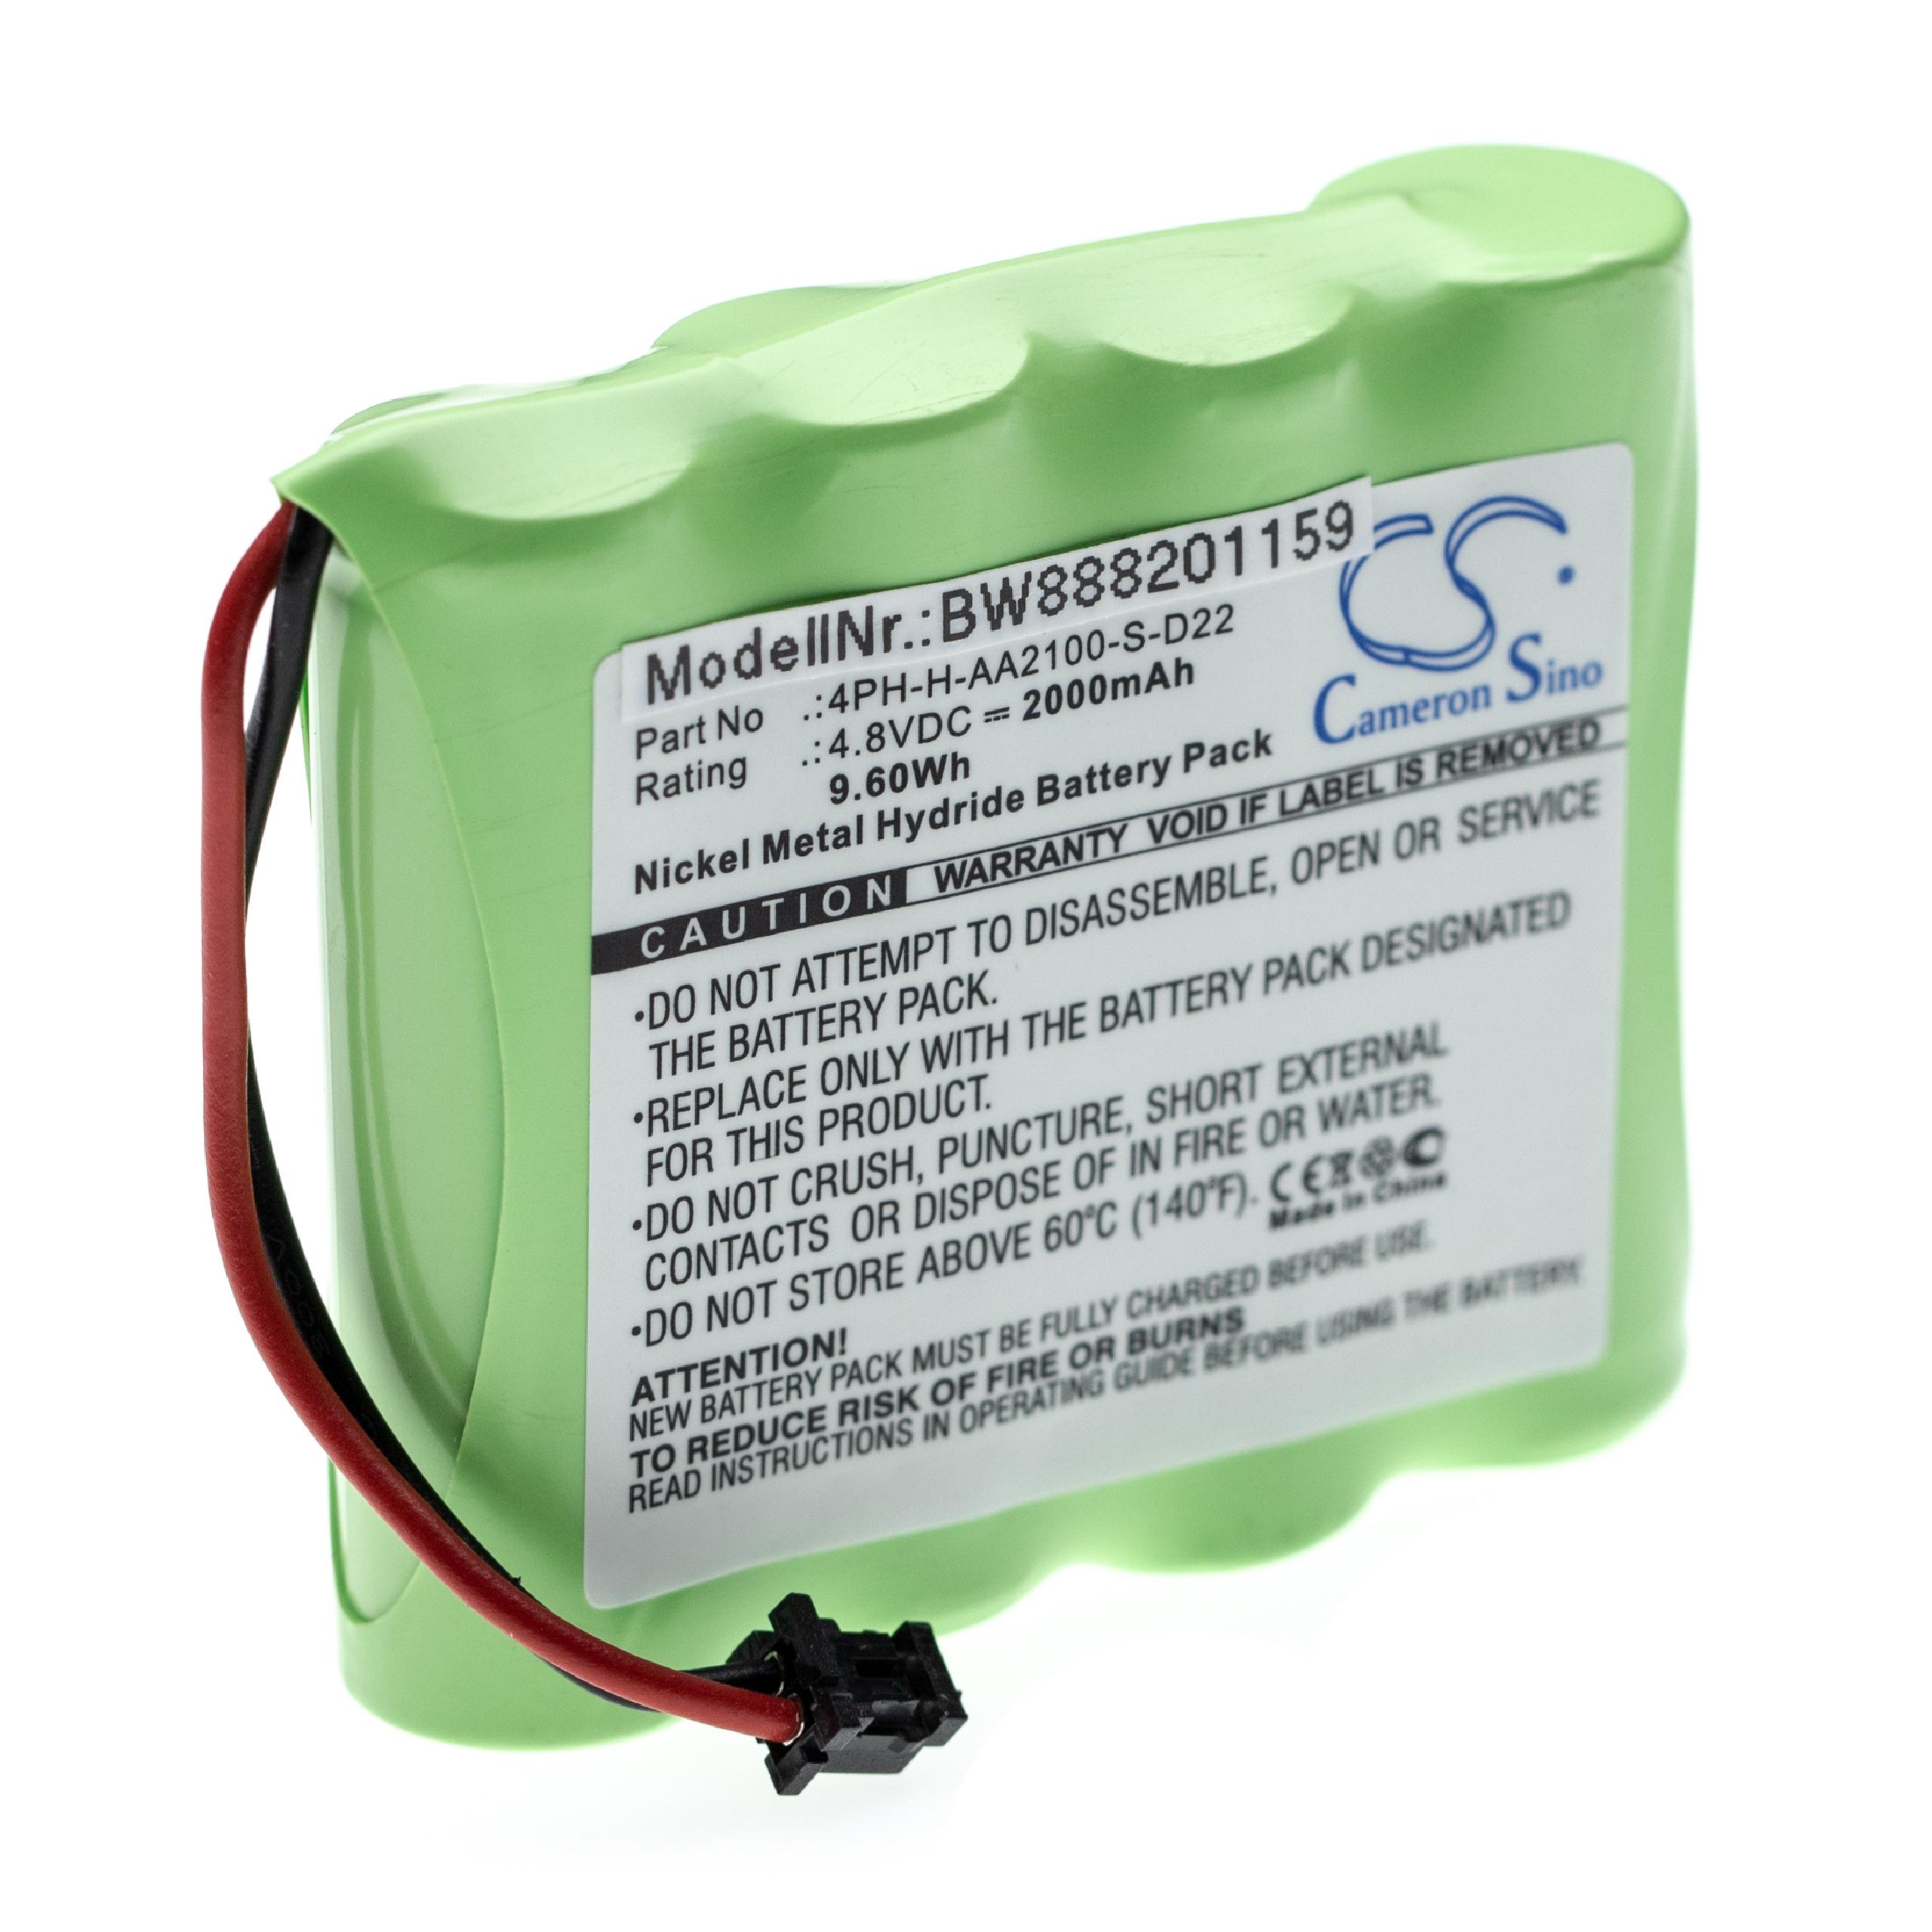 Batterie remplace DSC 17000153, 4PH-H-AA2100-S-D22, BATT2148V pour centrale d'alarme - 2000mAh 4,8V NiMH